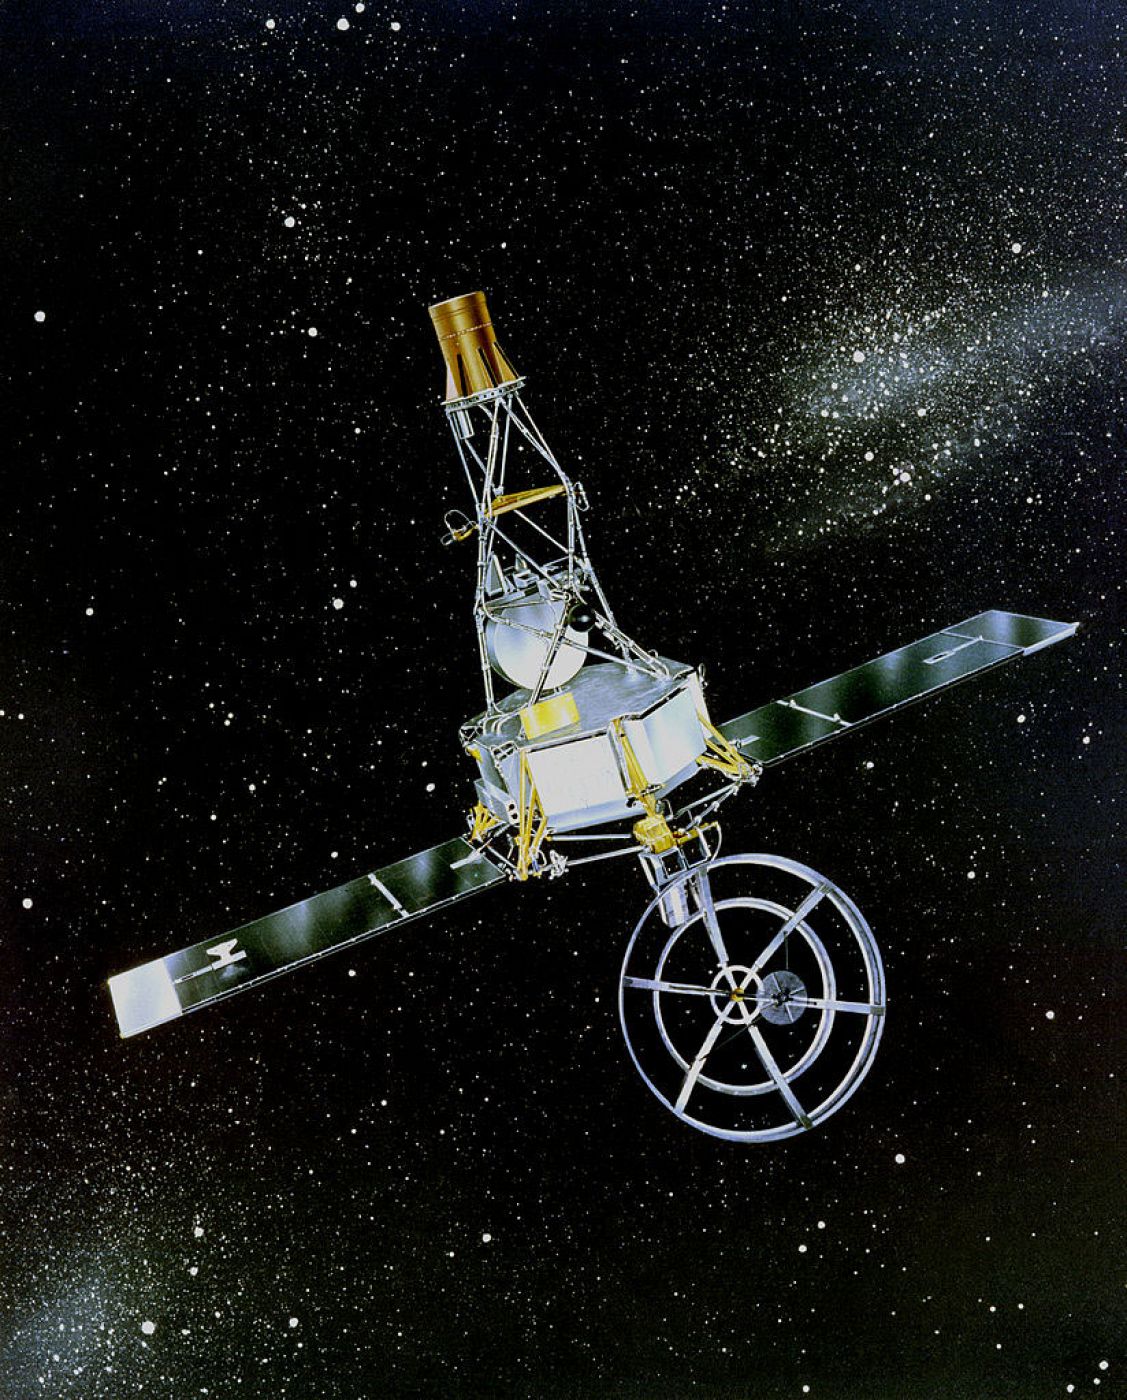 Impresión artística de la Mariner 2 en el espacio